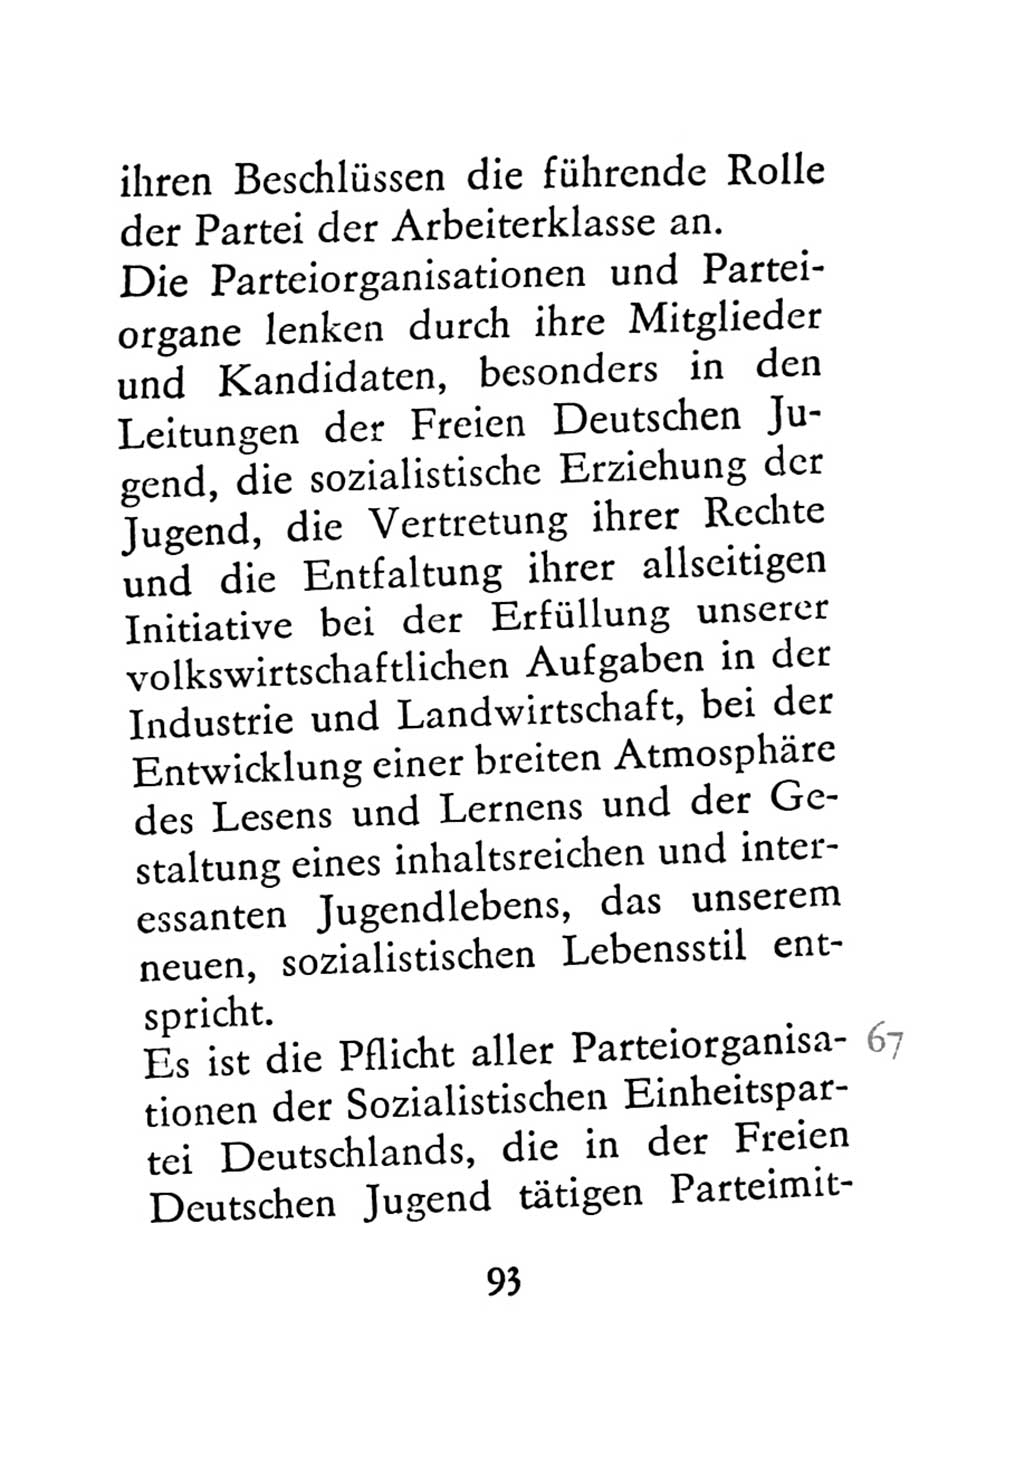 Statut der Sozialistischen Einheitspartei Deutschlands (SED) 1971, Seite 93 (St. SED DDR 1971, S. 93)